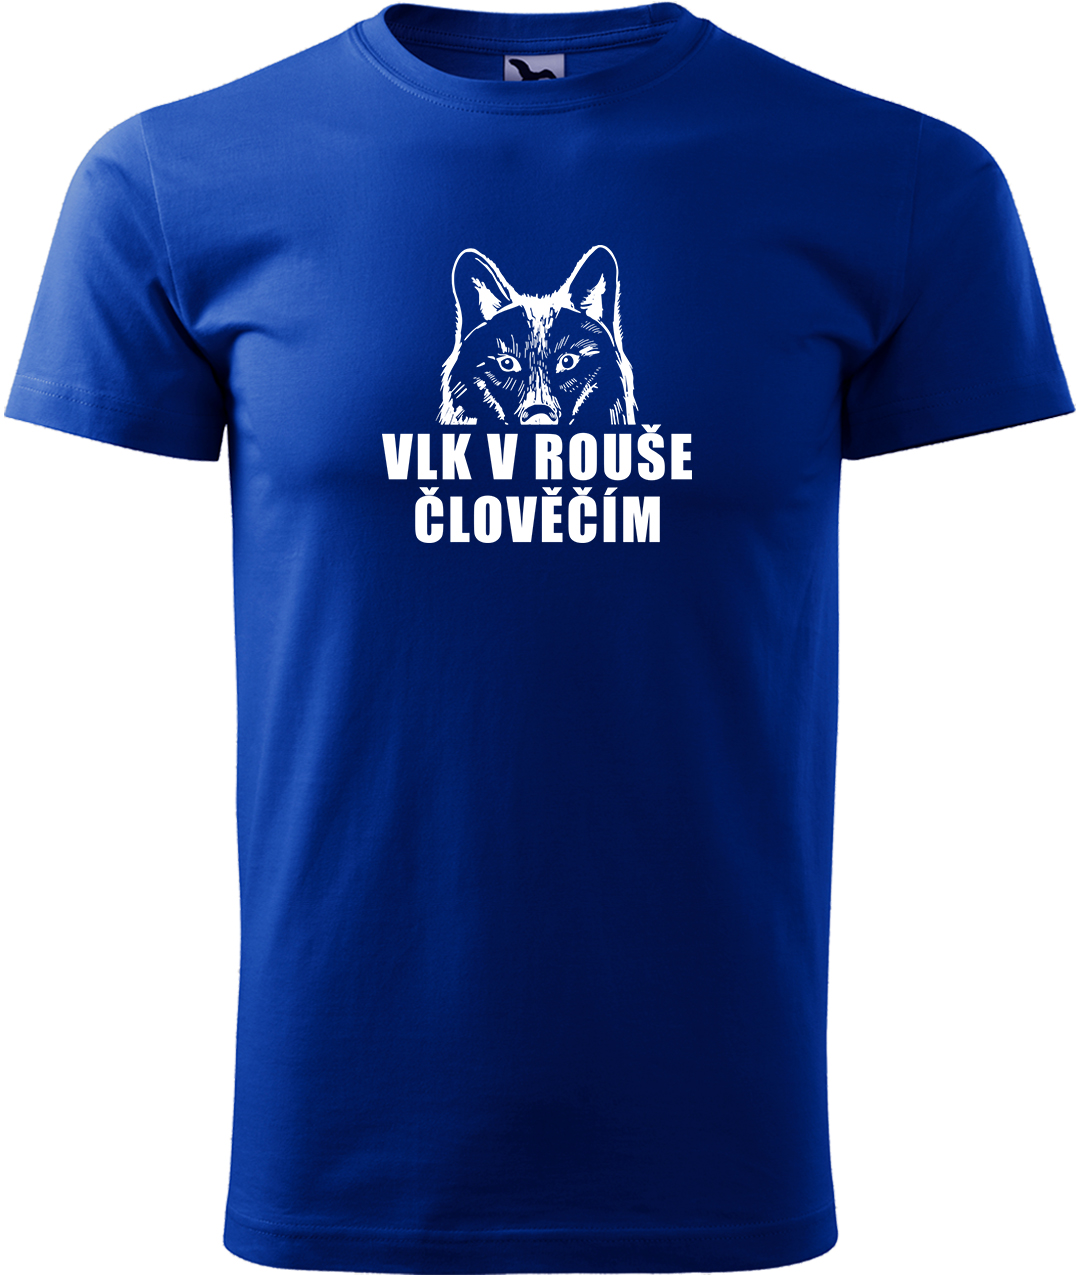 Pánské tričko s vlkem - Vlk v rouše člověčím Velikost: S, Barva: Královská modrá (05), Střih: pánský